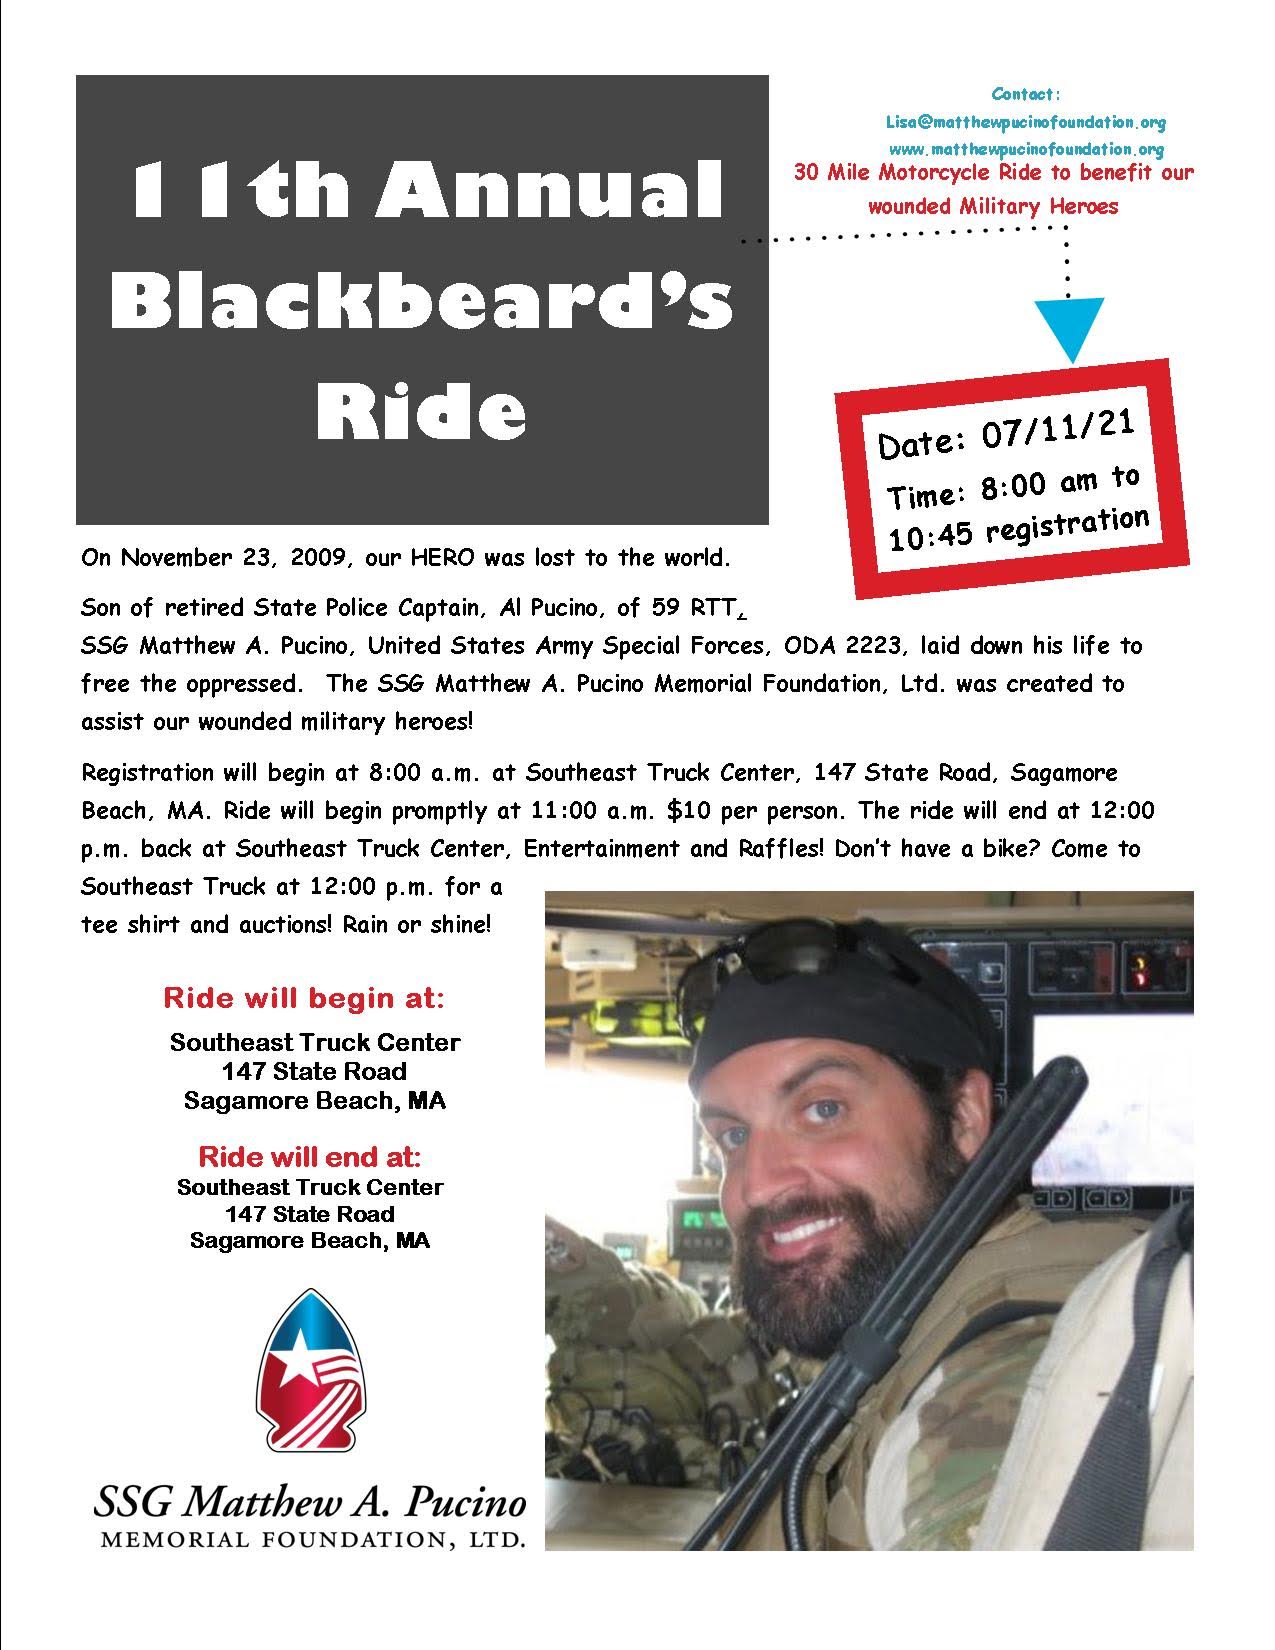 Blackbeard's Ride